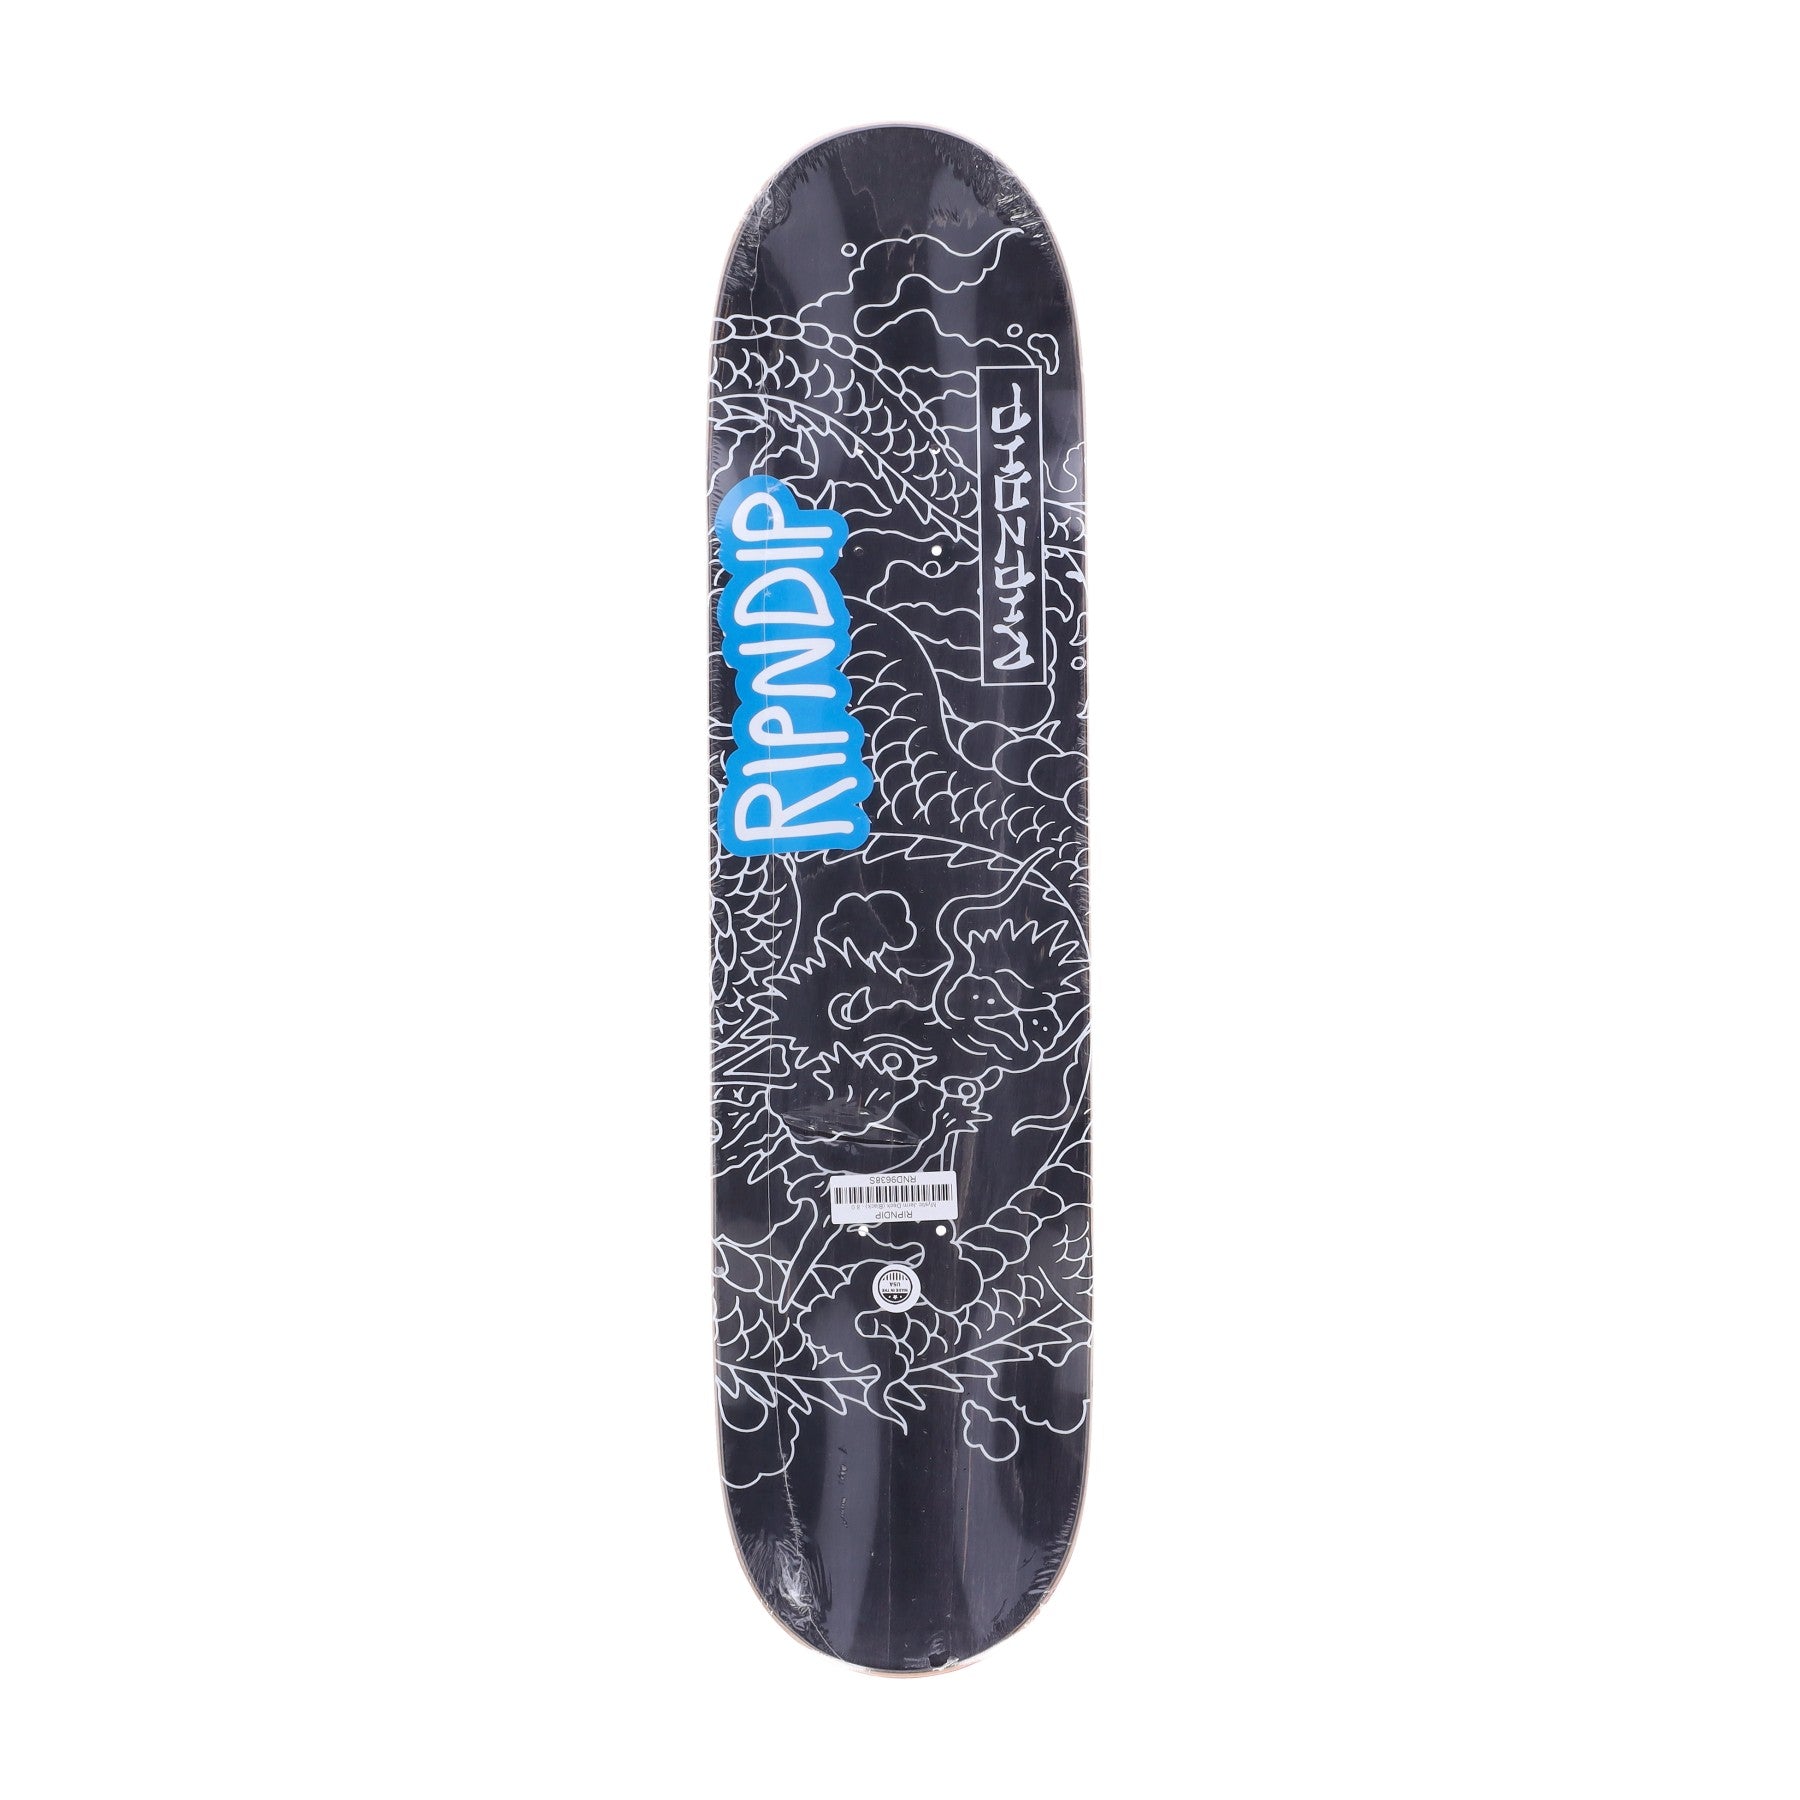 Ripndip, Skateboard Tavola Uomo Mystic Jerm Board, Black